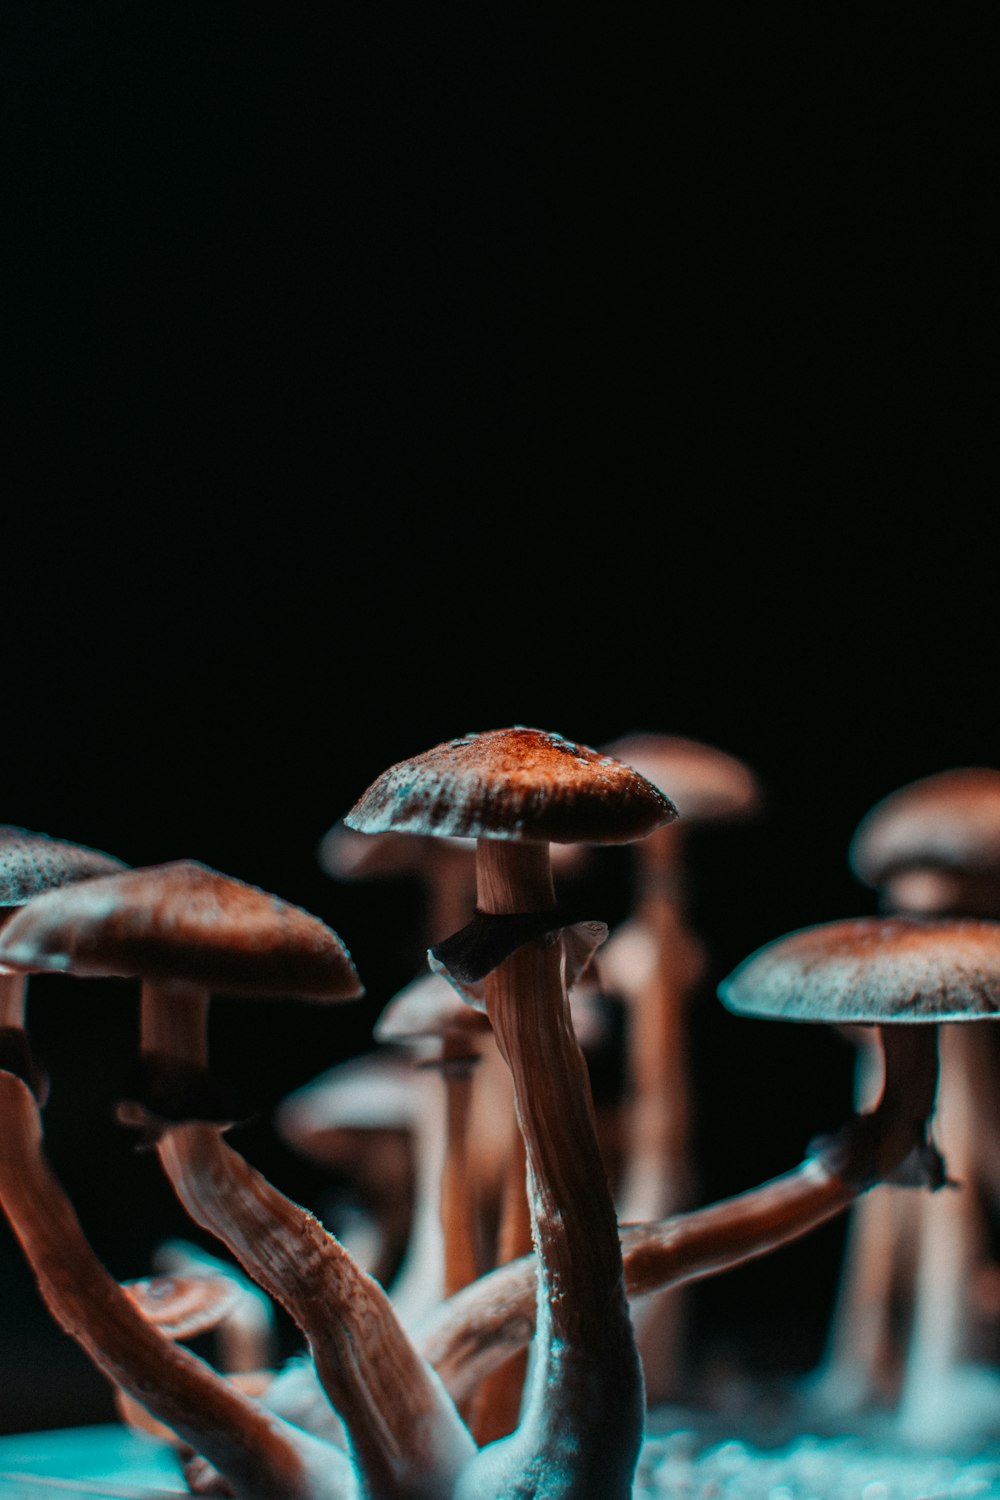 Nấm nâu trên nền đen (Brown mushrooms on black background): Với sự đối lập giữa những cây nấm nâu trên nền đen lạnh lẽo, những hình ảnh này đem đến một cảm giác đầy mê hoặc và khó quên. Hãy tận hưởng sự hài hòa giữa sự mạnh mẽ và thanh lịch của chúng.